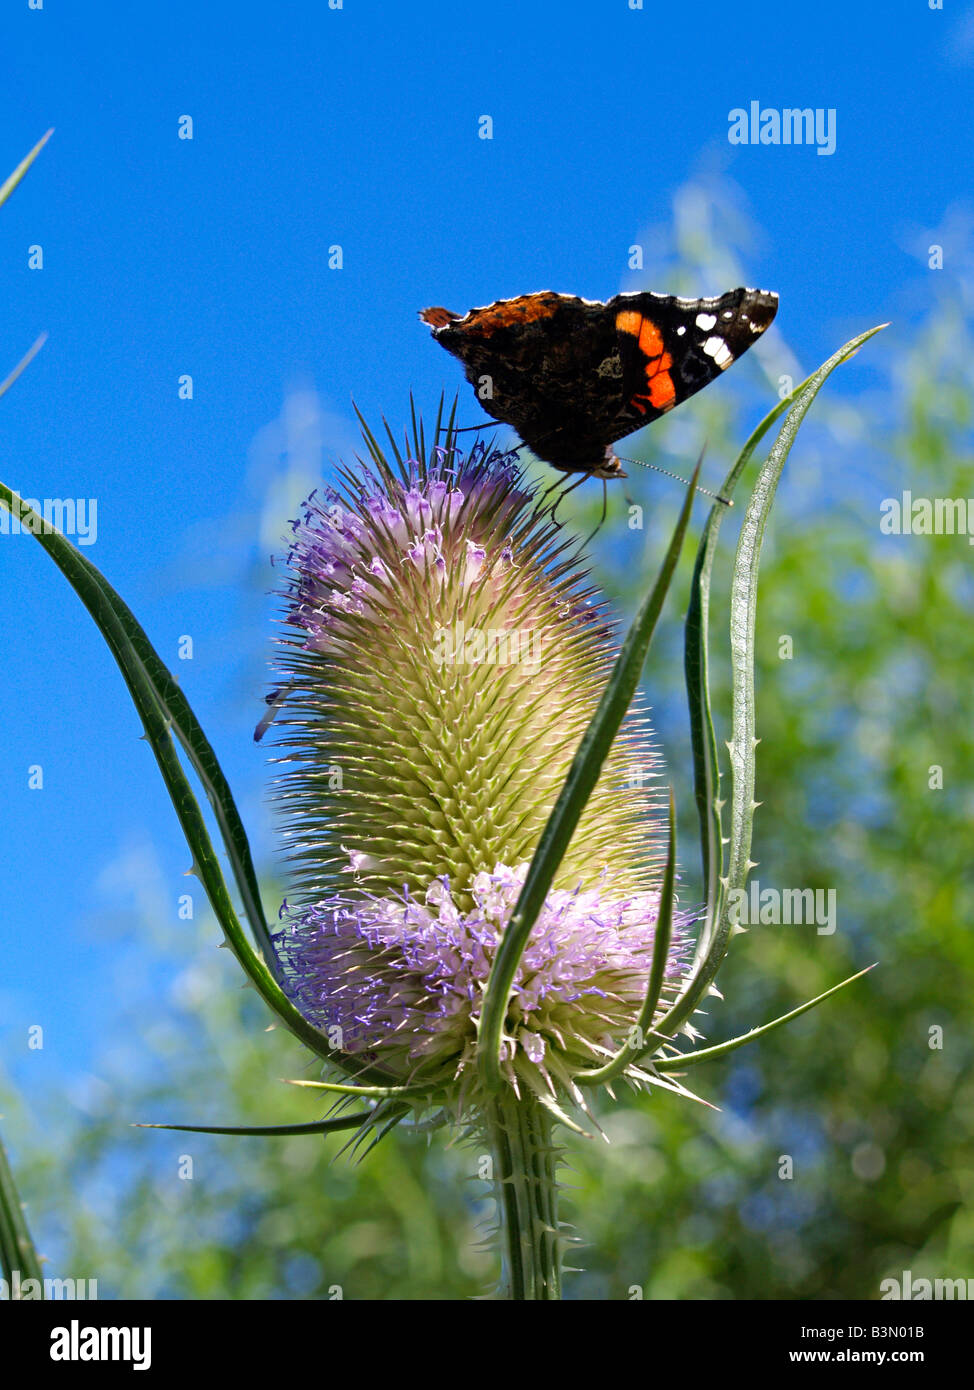 Schmetterling auf einer Distel, thistle with butterfly Stock Photo